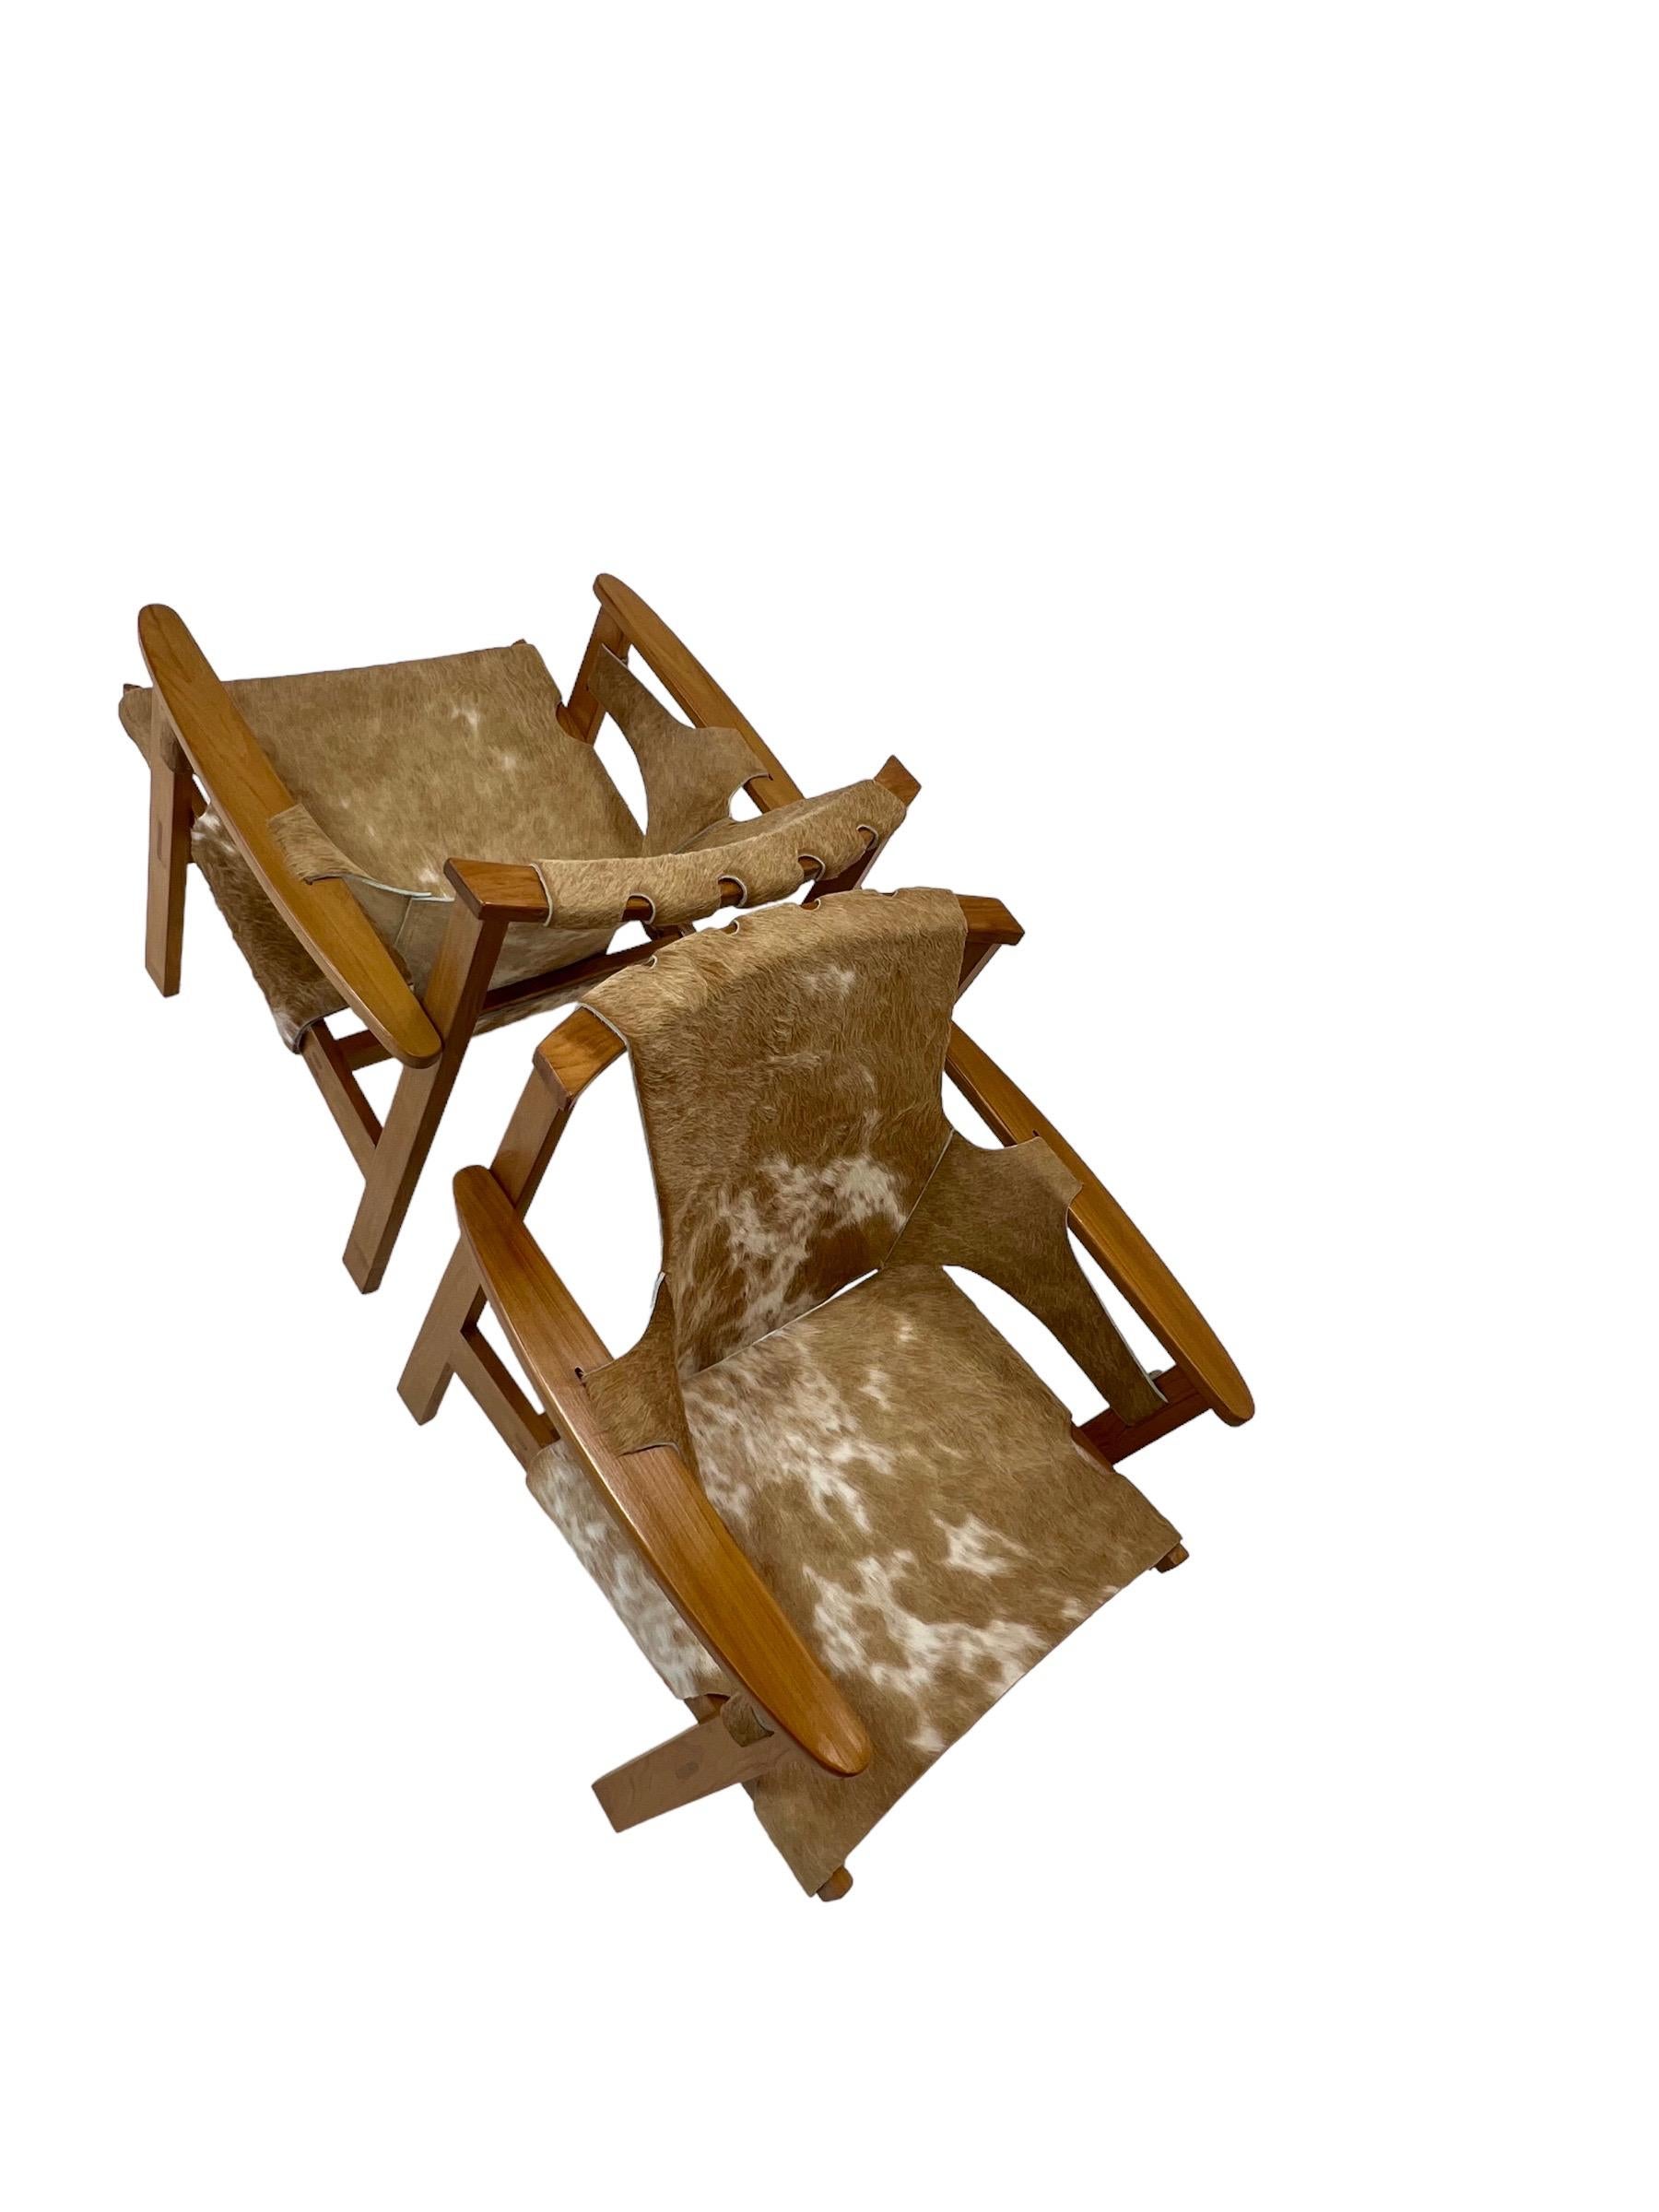 Ces chaises longues caractéristiques ont été conçues par l'architecte et designer de meubles suédois Carl-Axel Acking en 1957.
Le nom de la chaise 